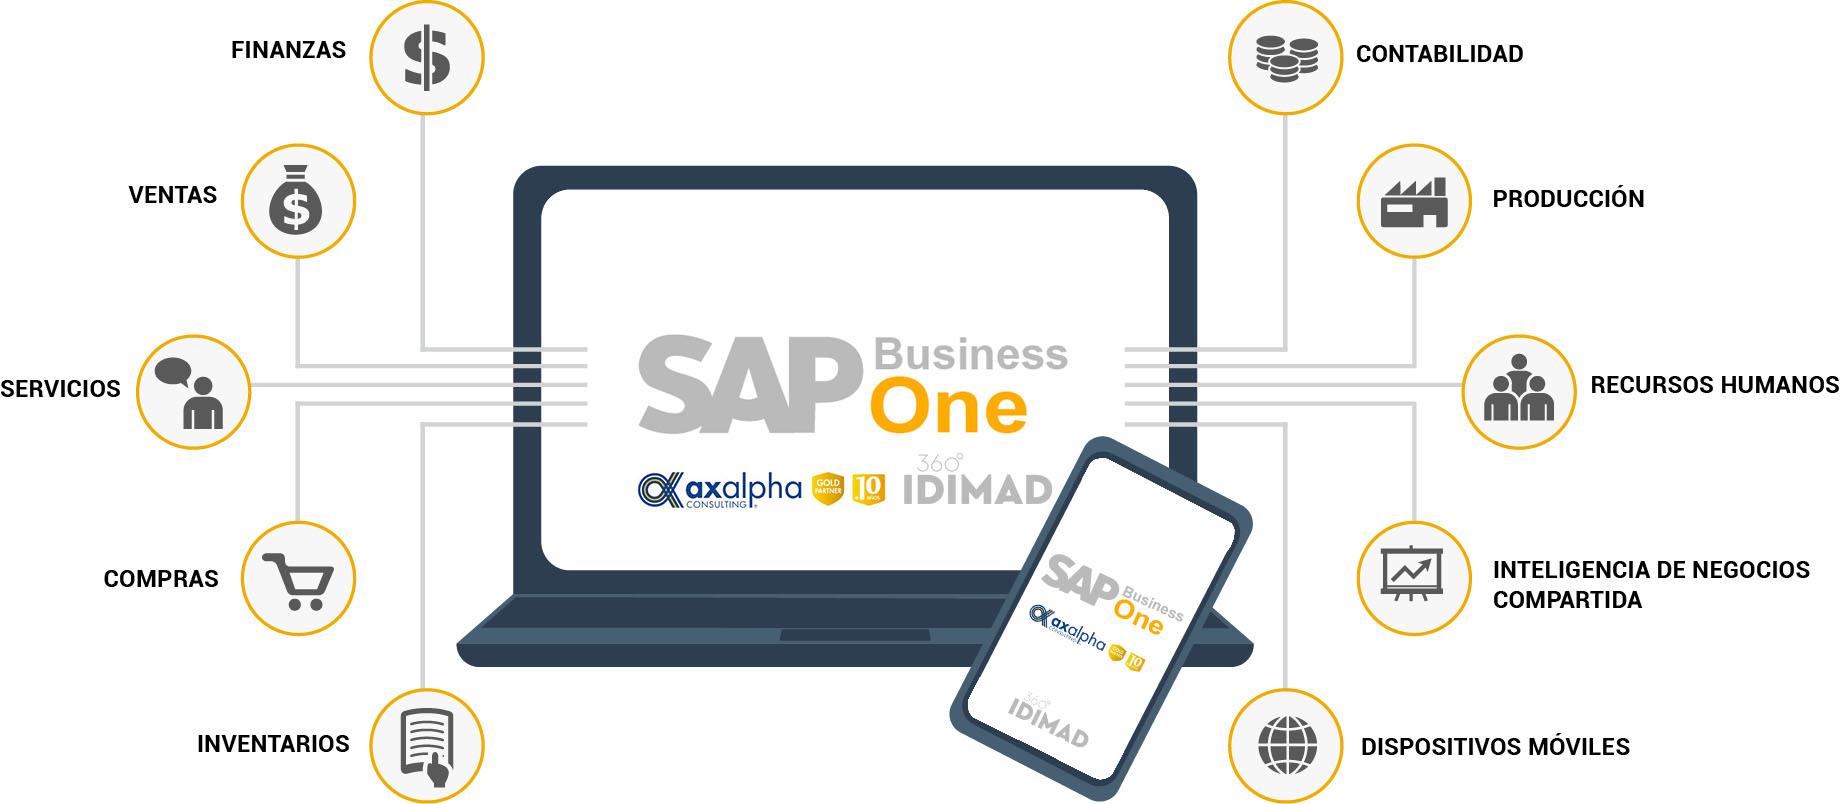 Idimad 360 Agencia de Marketing y Tecnologia en Salamanca desarrollo SAP BUSINESS ONE